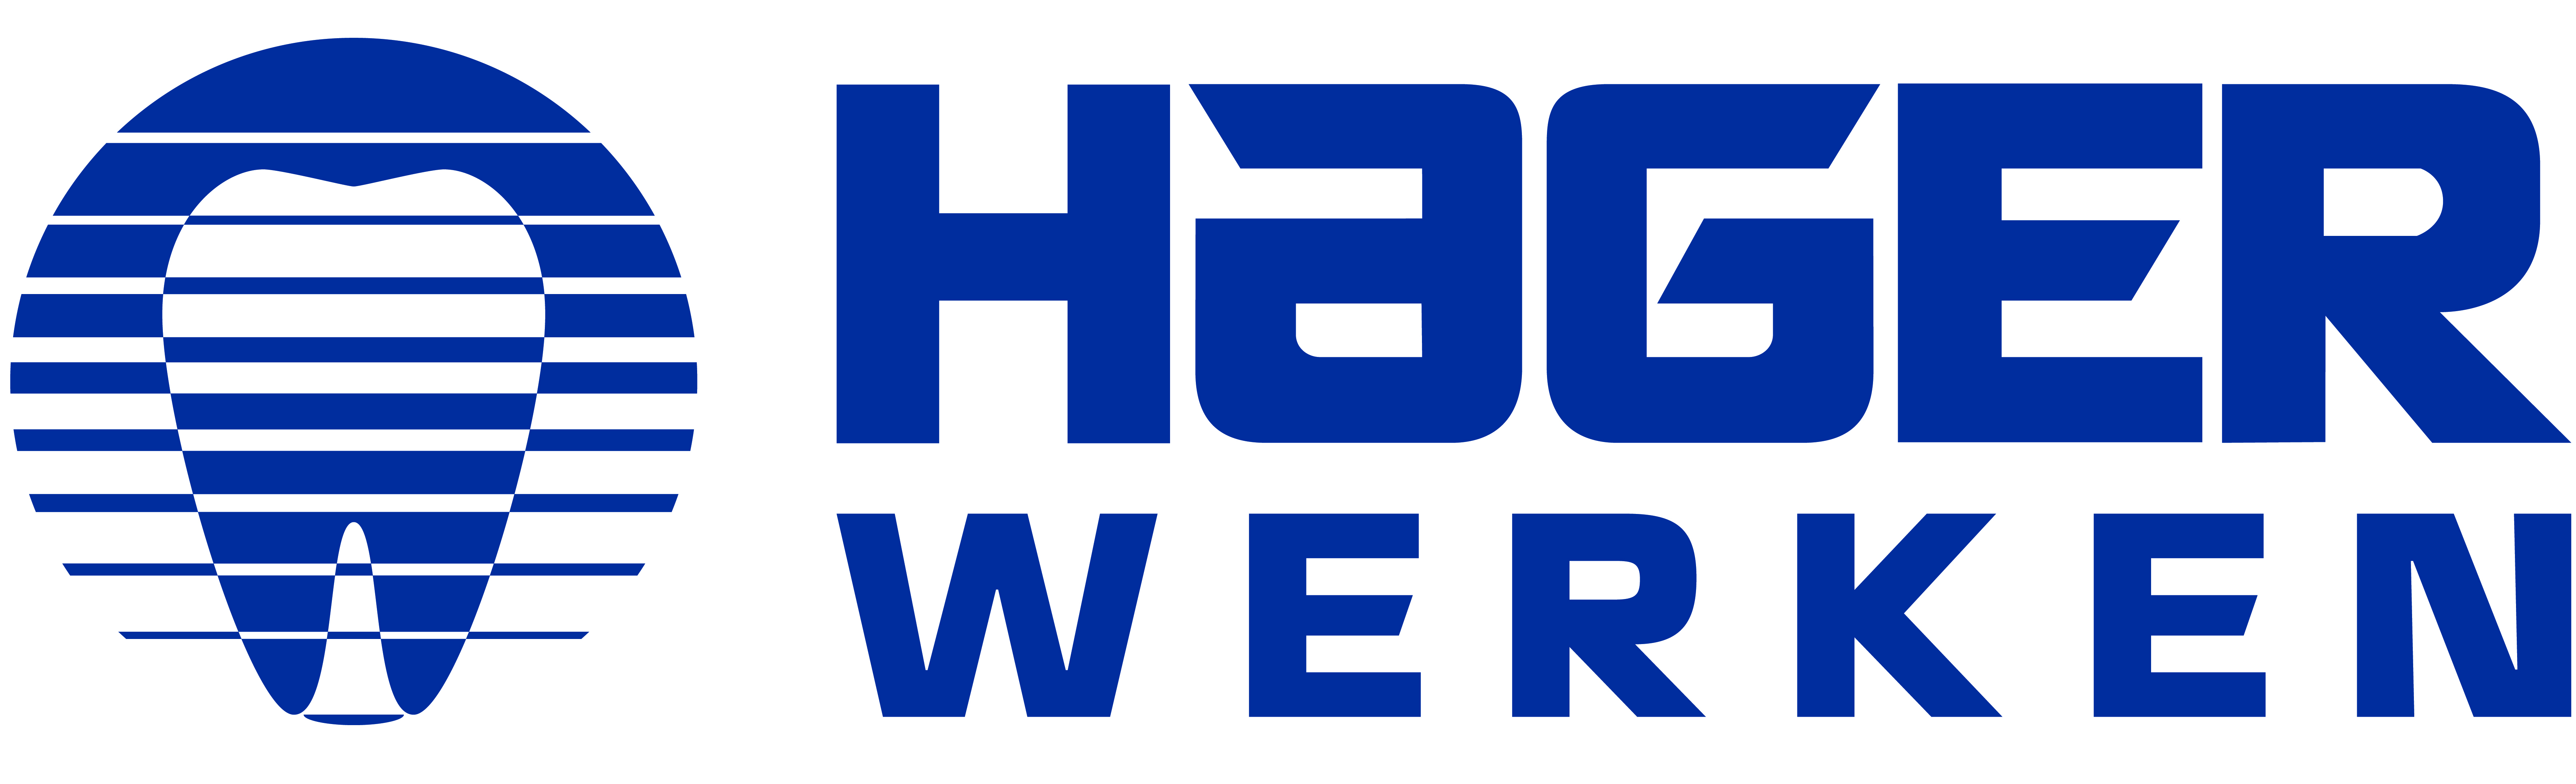 Hager & Werken GmbH & Co. KG logo